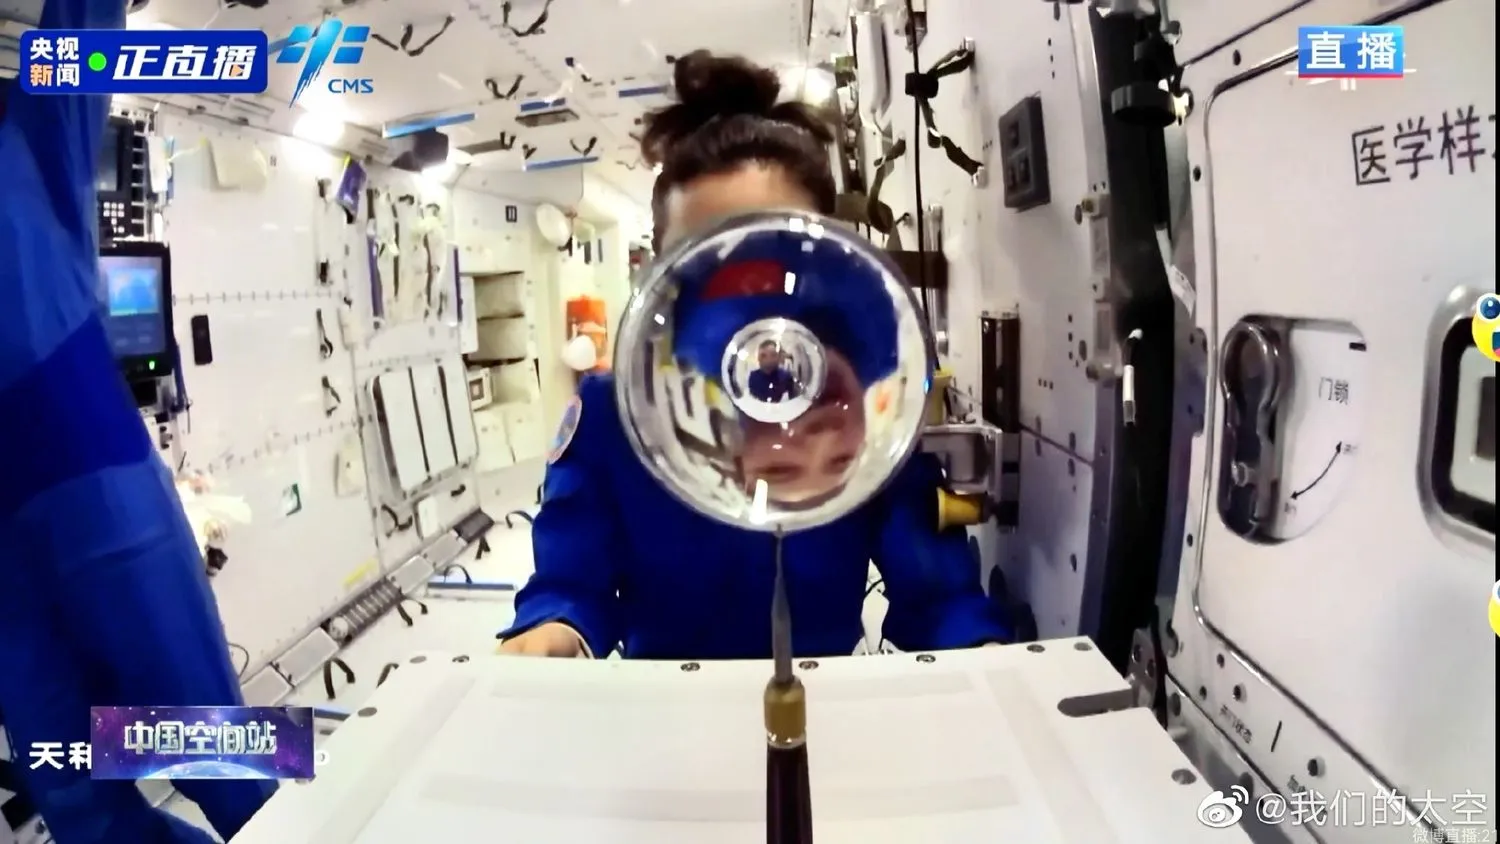 eine Wasserkugel vor einem Astronauten auf einer Raumstation